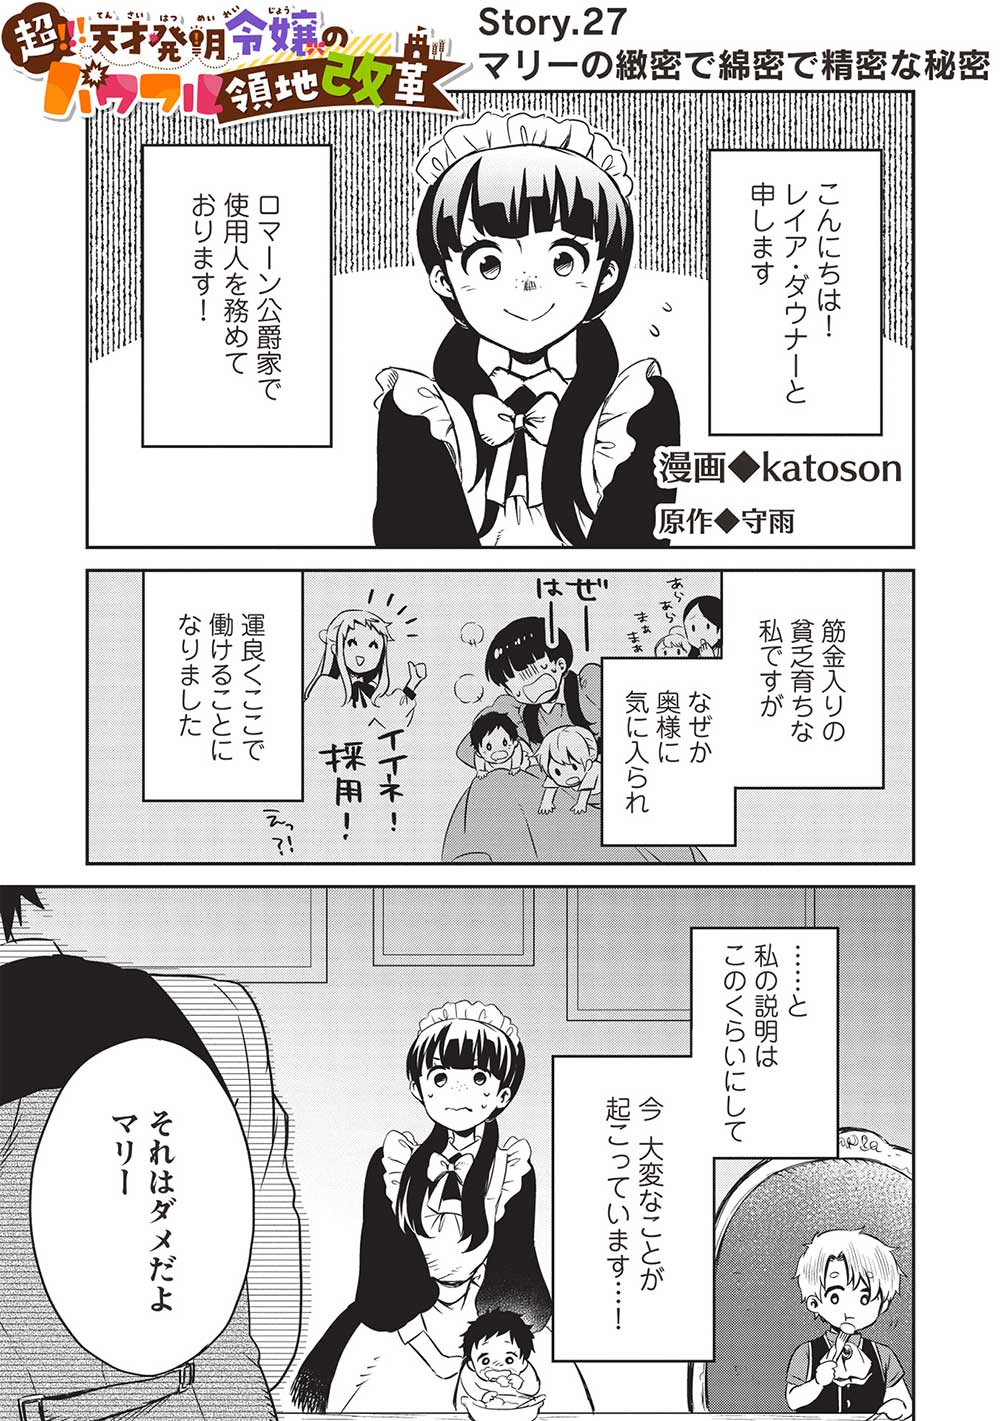 Chou!!! Tensai Hatsumei Reijou no Powerful Ryouchi Kaikaku  - Chapter 27 - Page 1